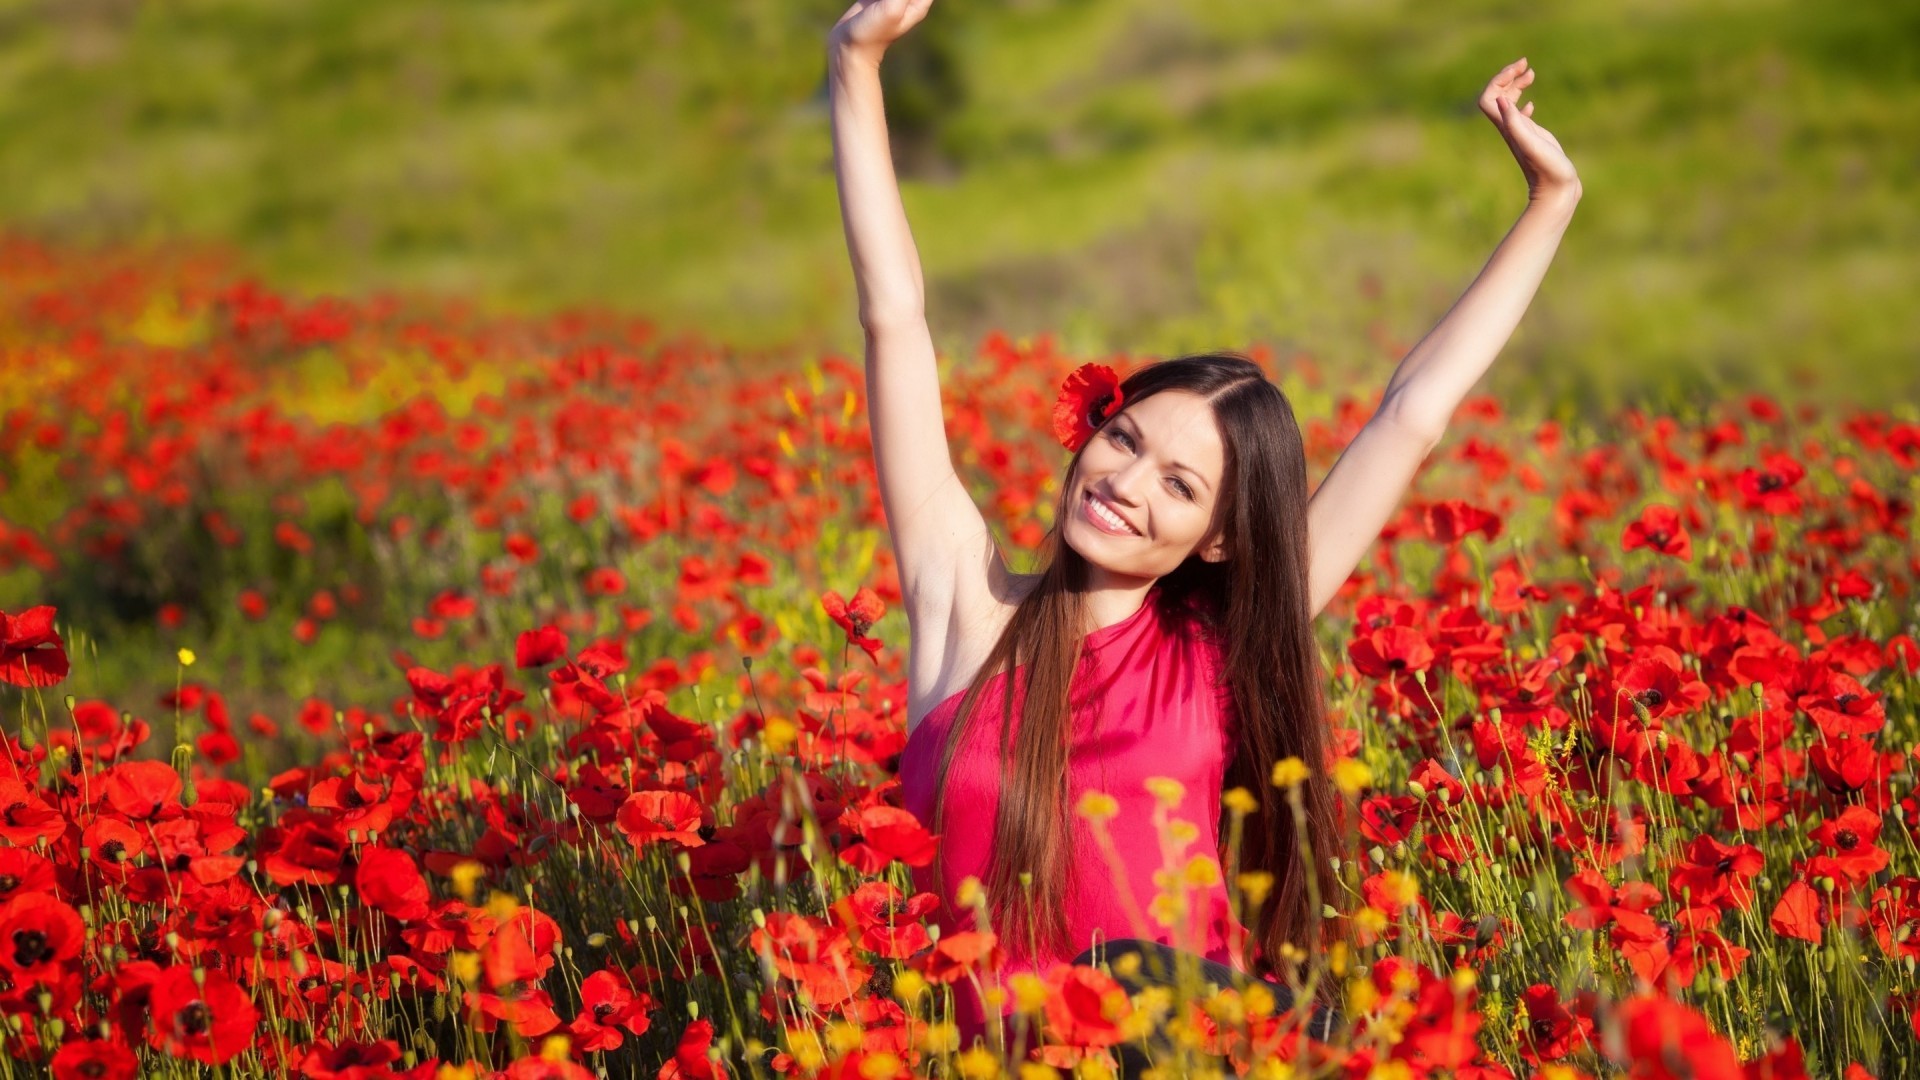 model women long hair brunette flowers smiling poppies red flowers Wallpaper